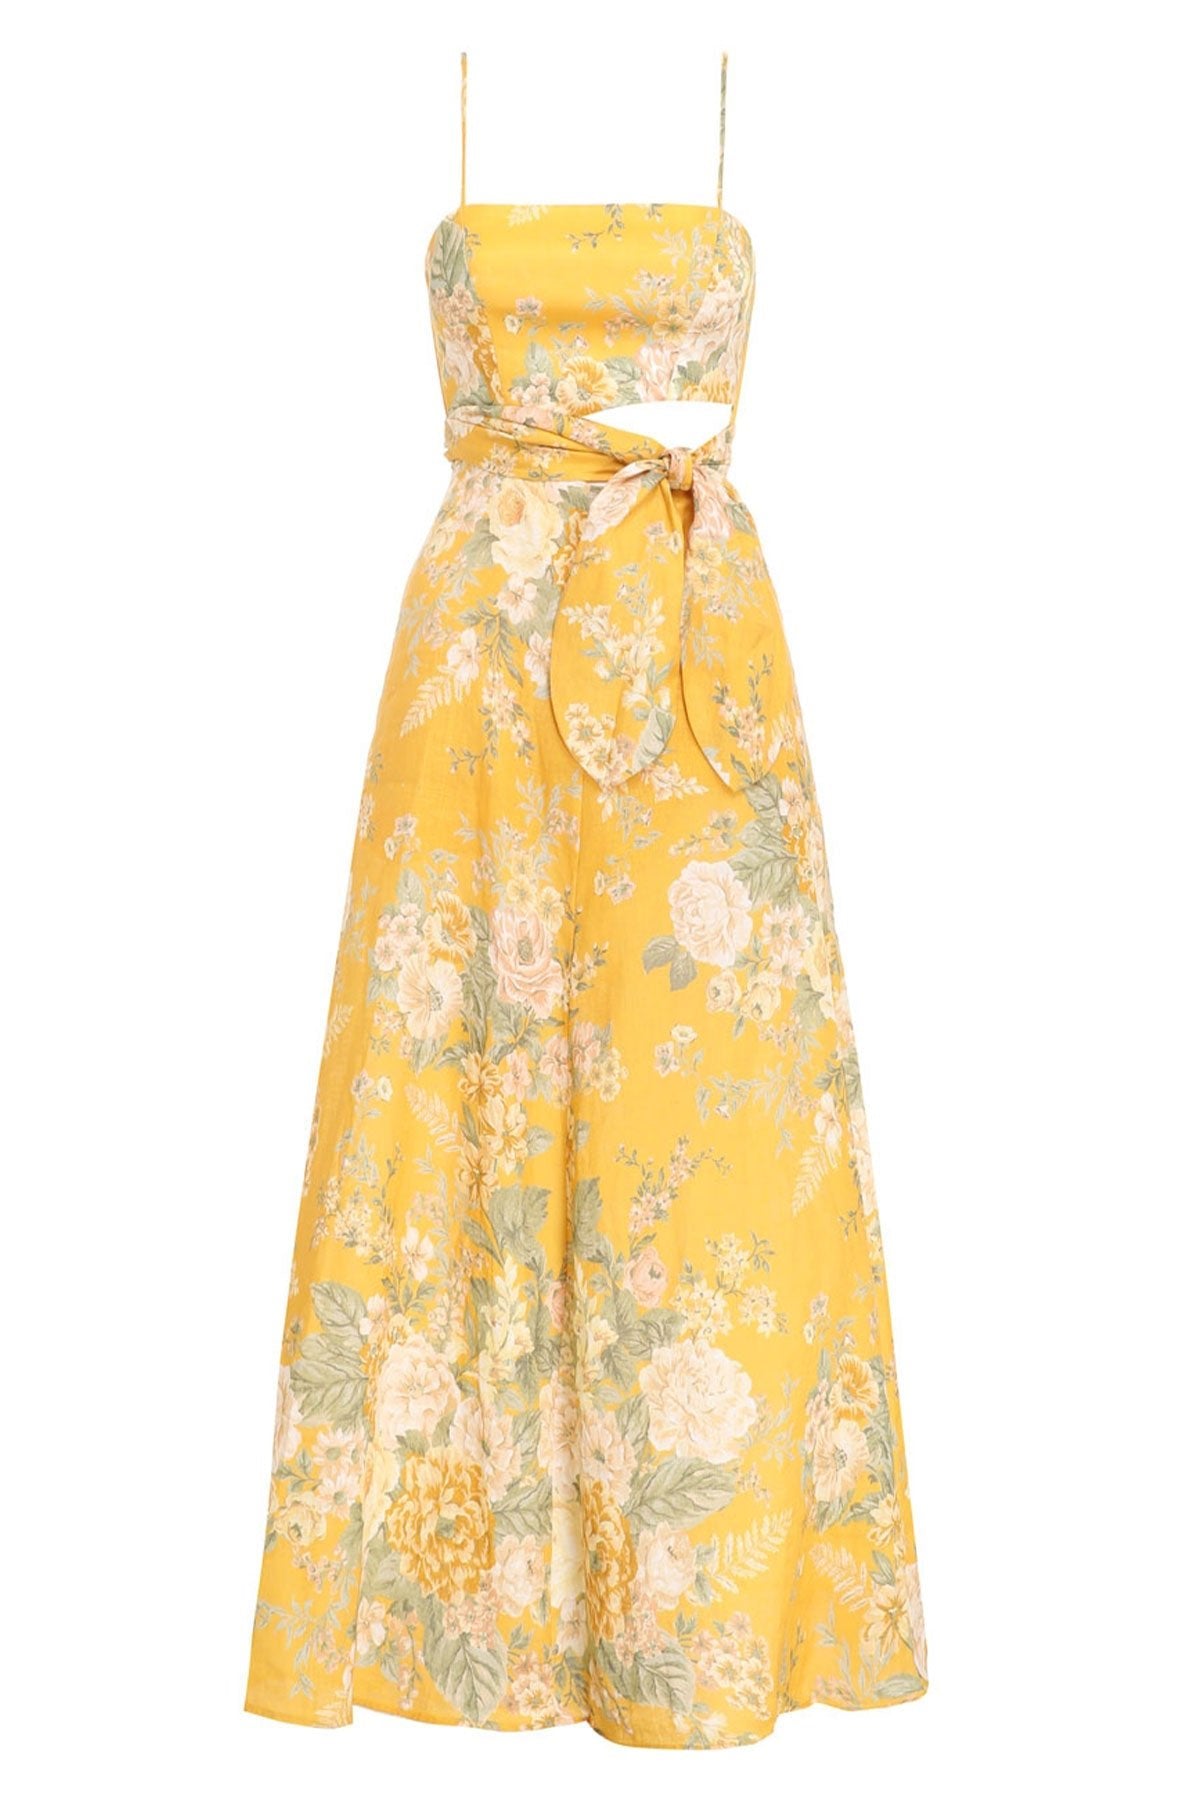 Amelie Scarf Tie Dress - shop-olivia.com